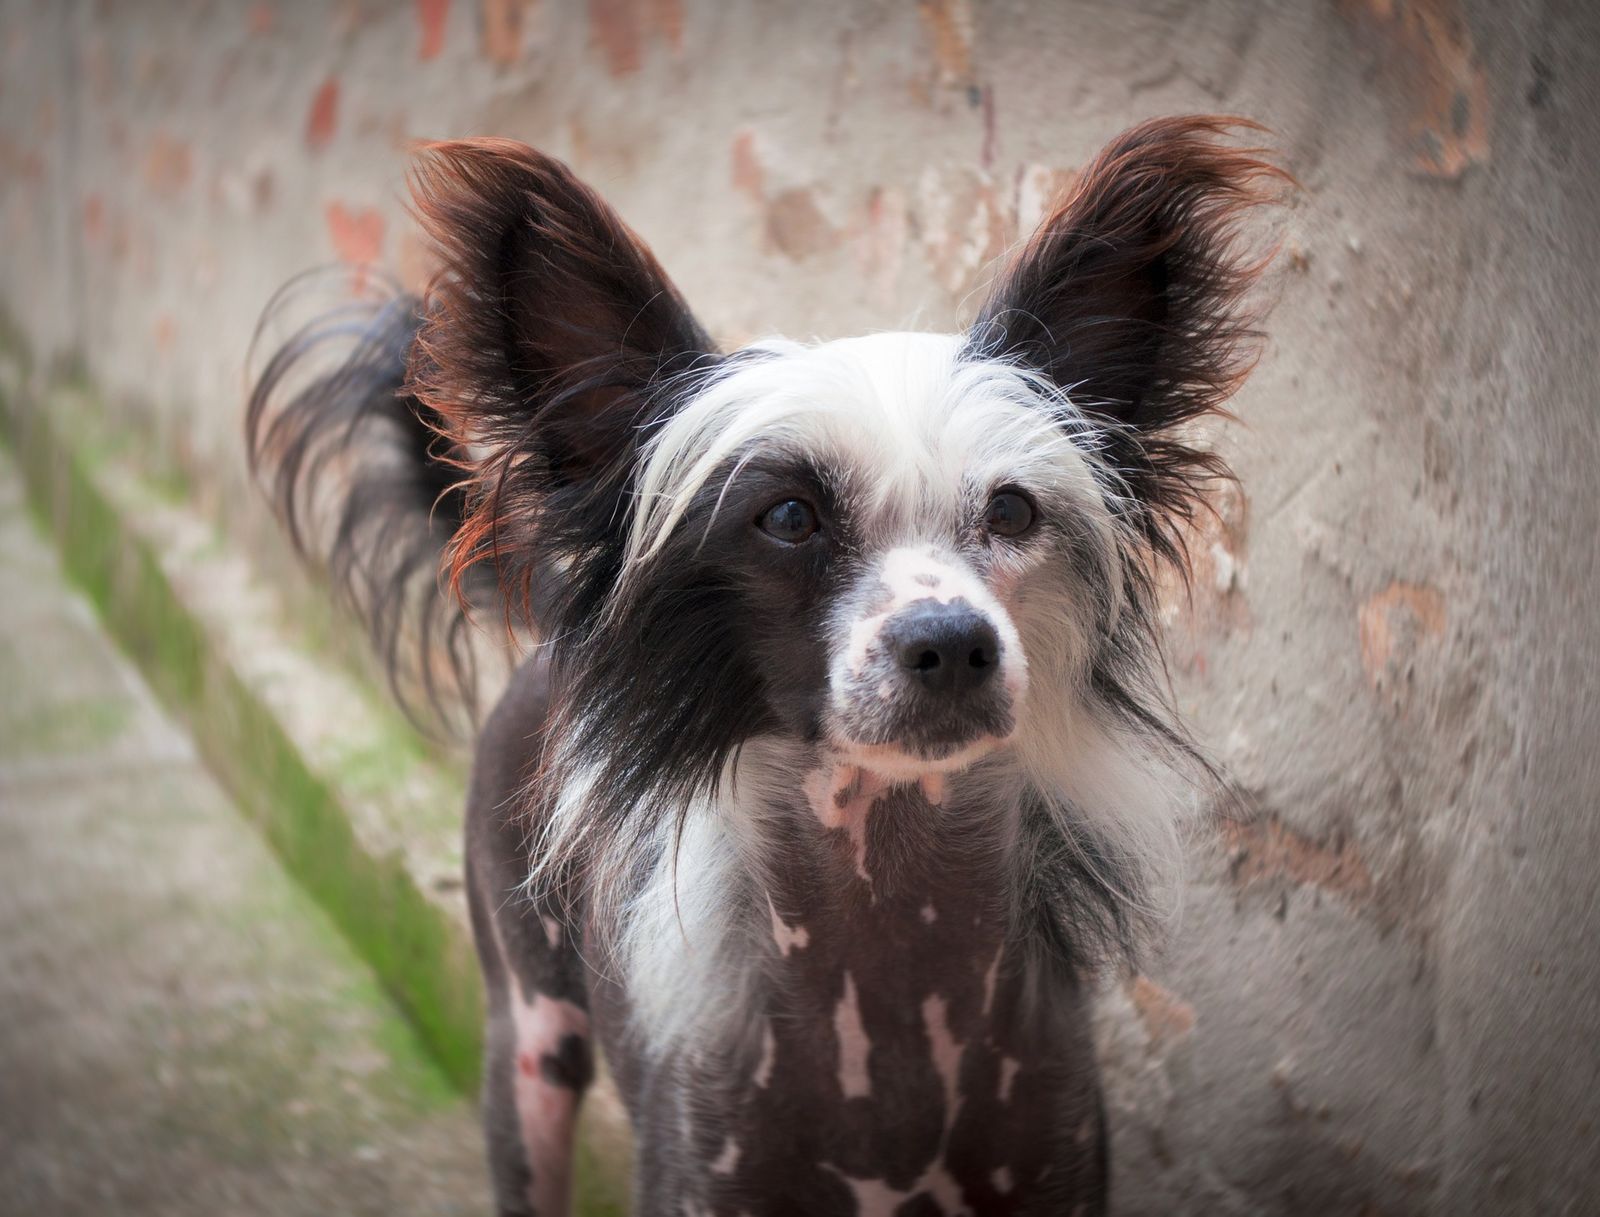 Ein spärlich behaarter Hund der Rasse Chinesischer Schopfhund mit braun-weiß befleckter Haut steht neben einer Wand und schaut zum Betrachter